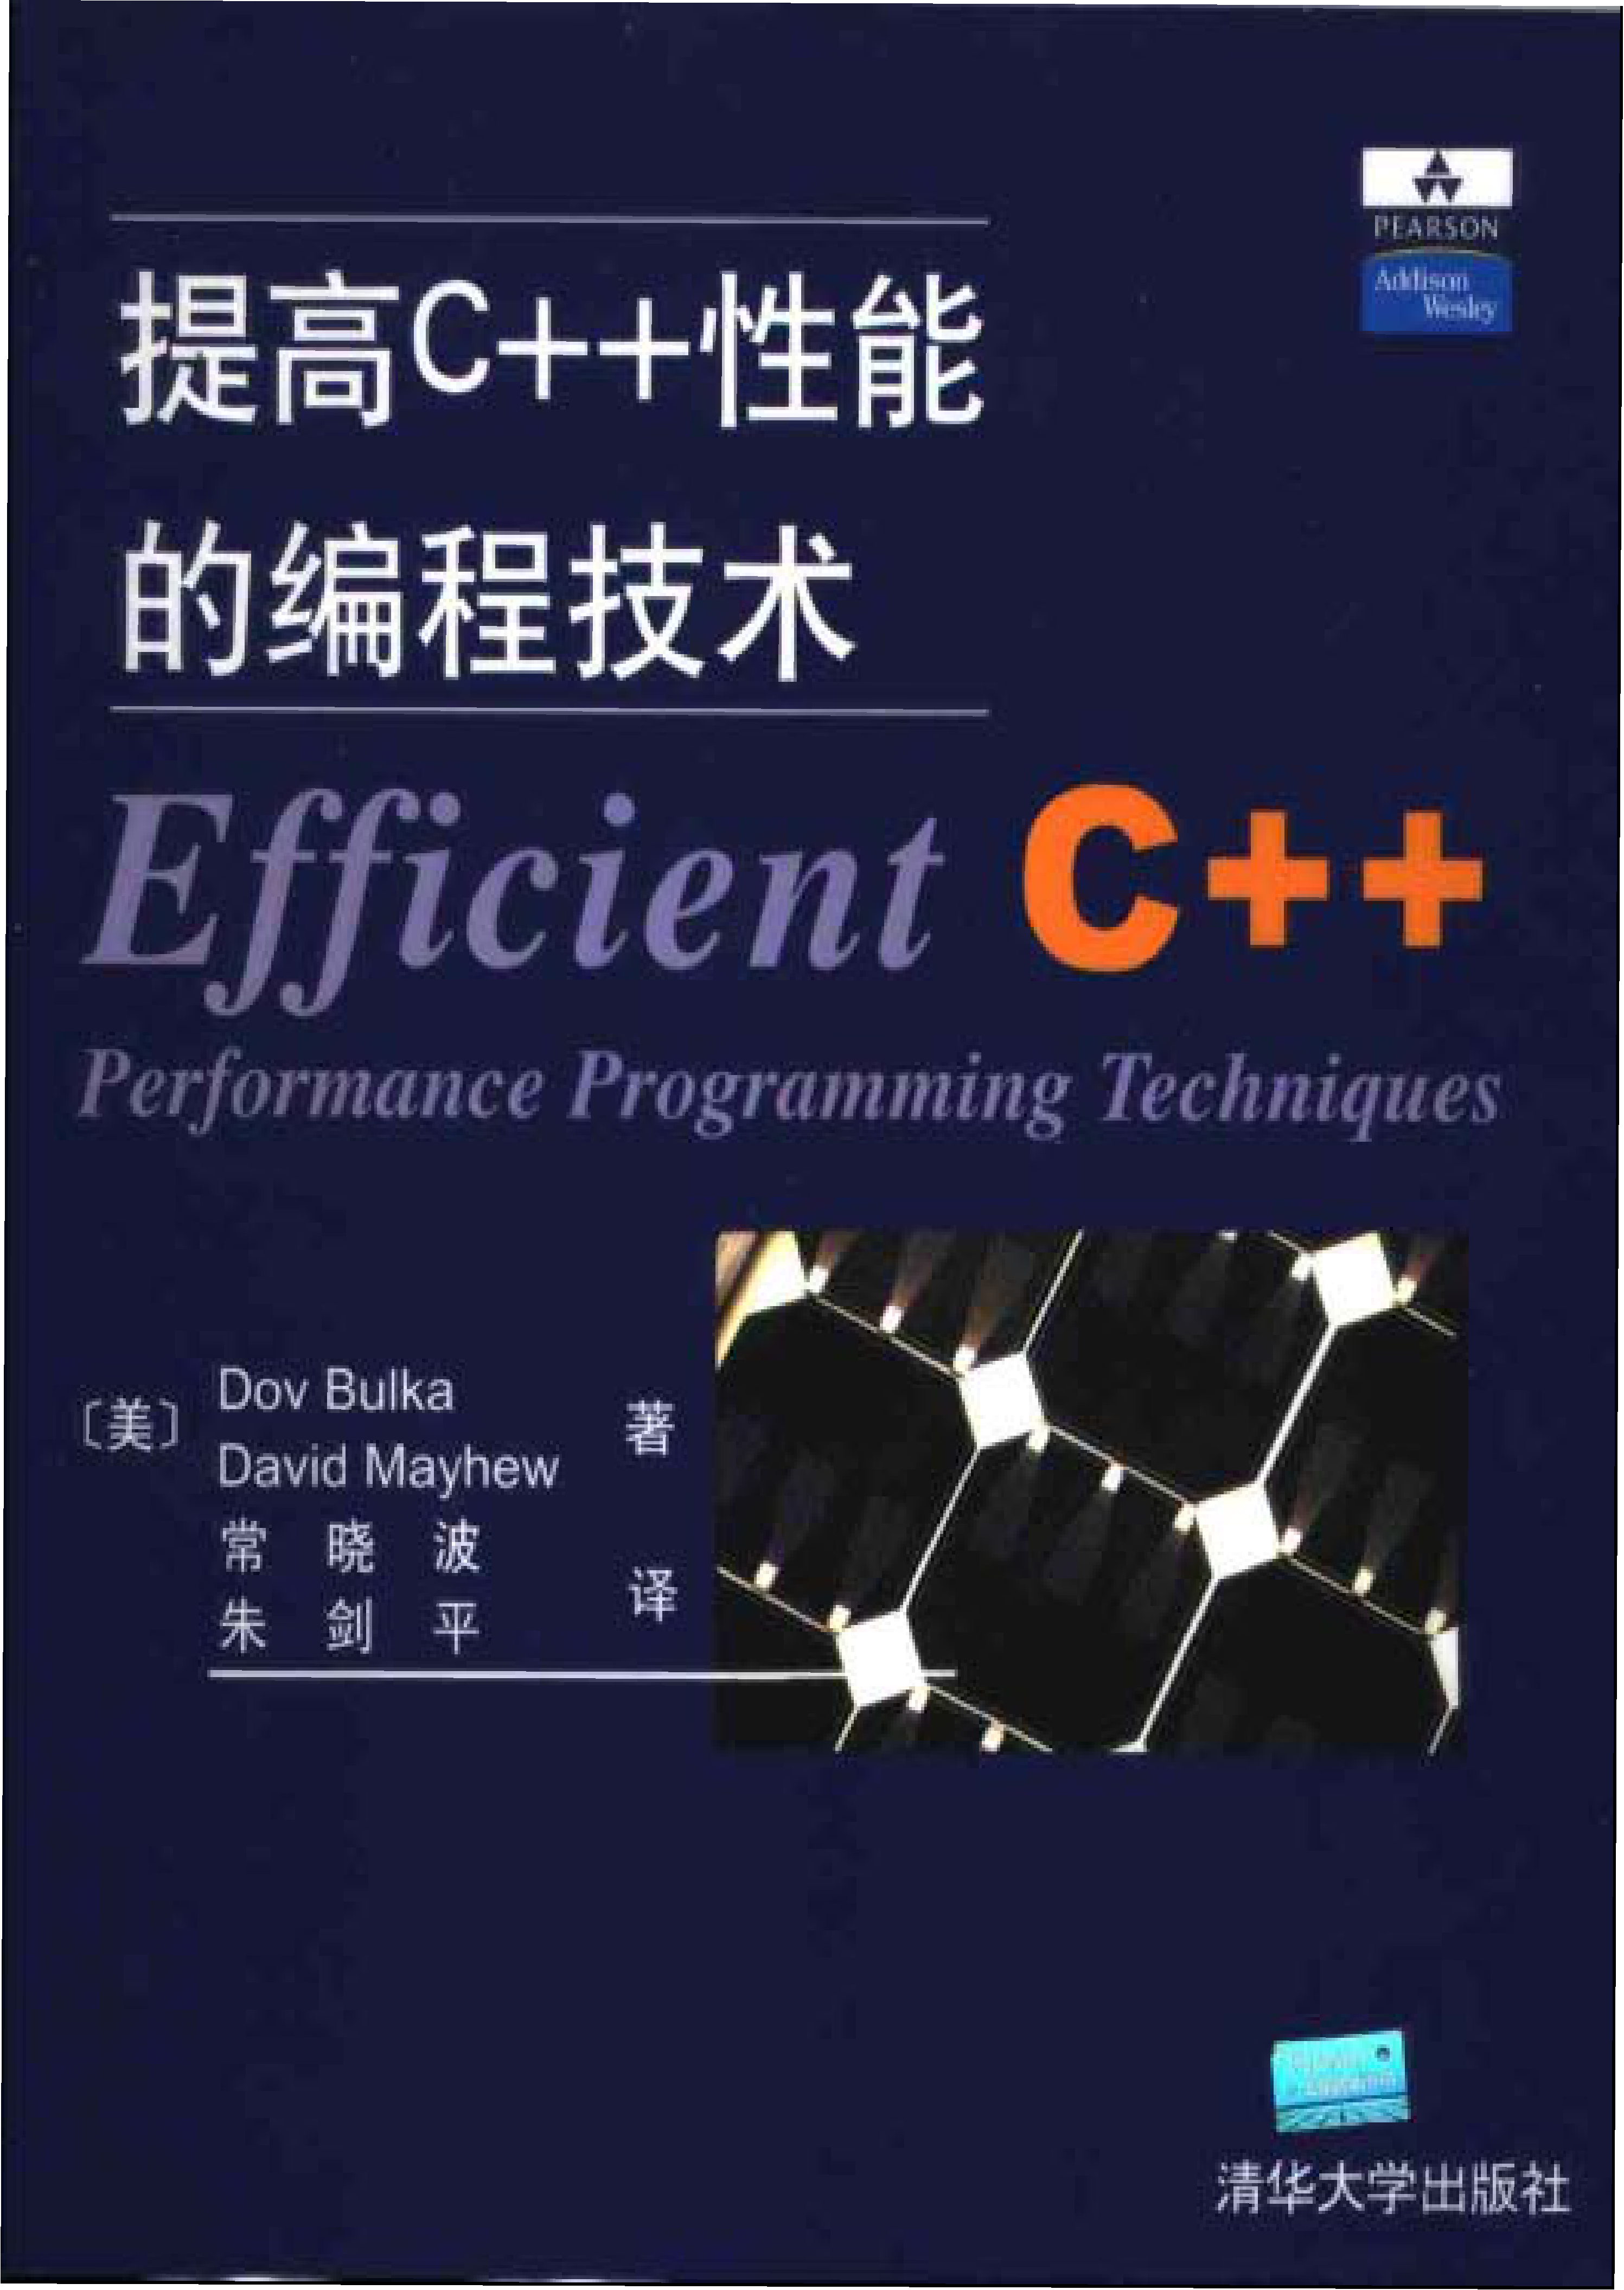 提高C++性能的编程技术.pdf